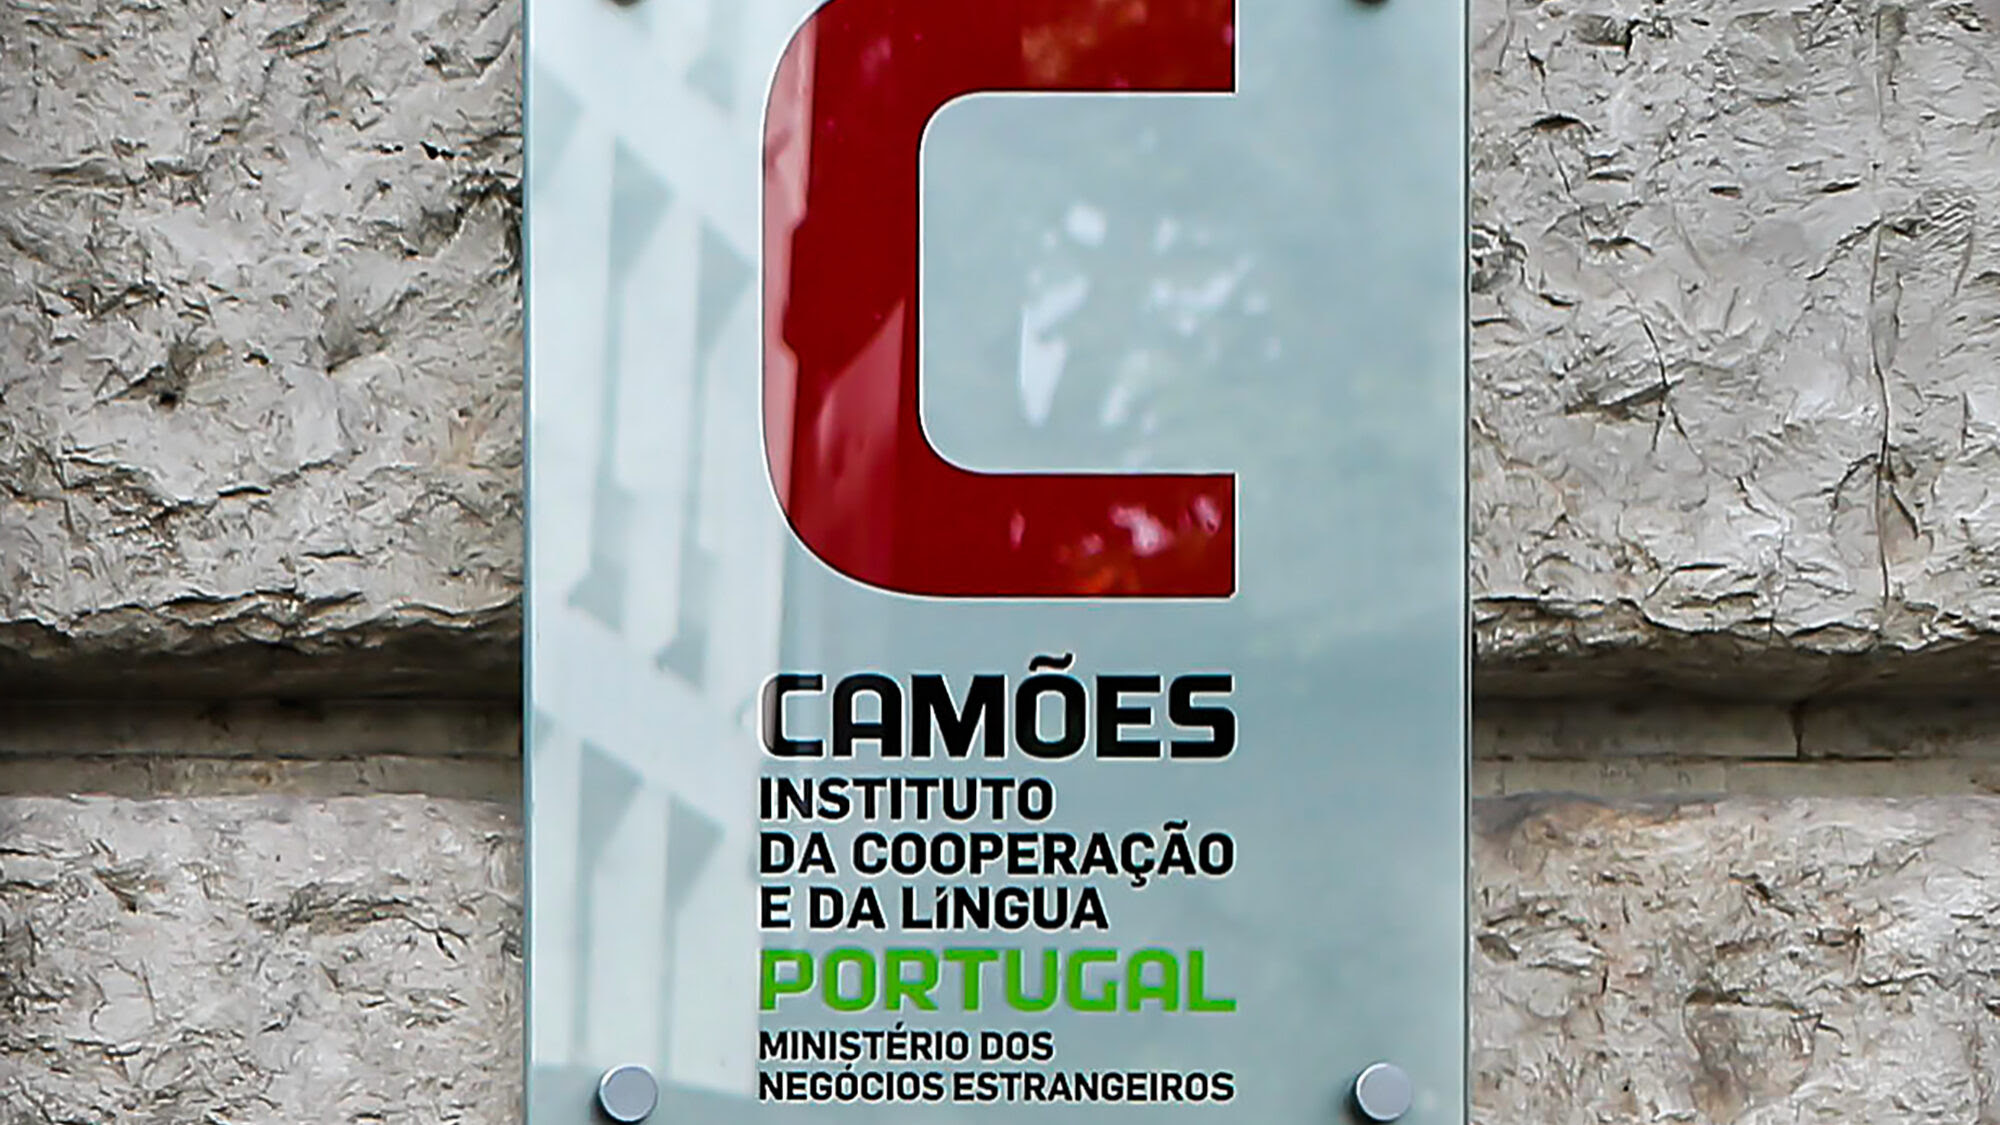 Camões - Instituto da Cooperação e da Língua, em Lisboa, 02 de julho de 2015. JOSÉ SENA GOULÃO/LUSA